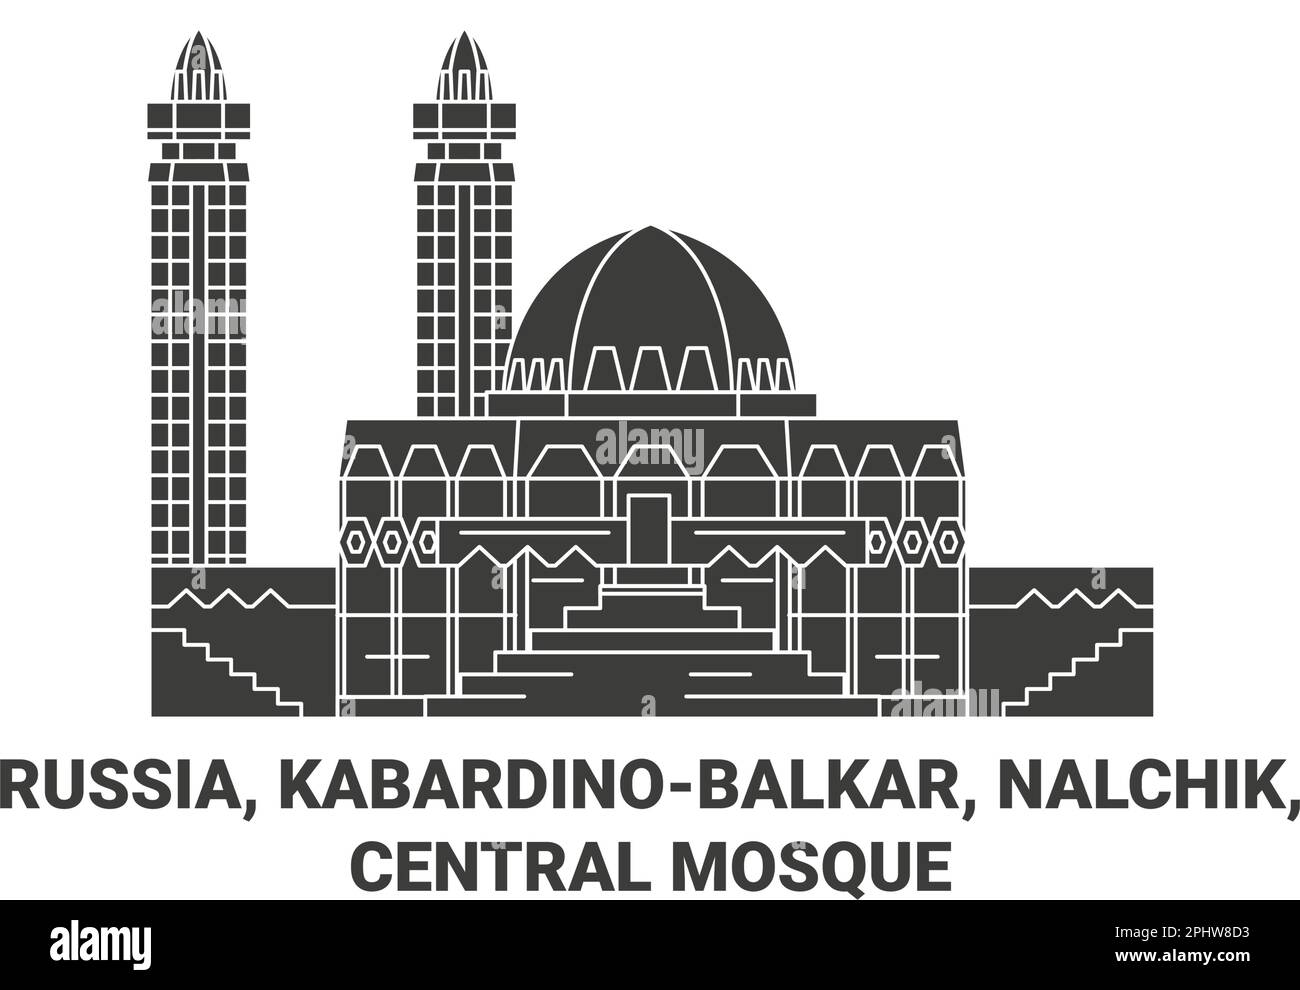 Russia, Kabardinobalkar, Nalchik, Central Mosque travel landmark vector illustration Stock Vector